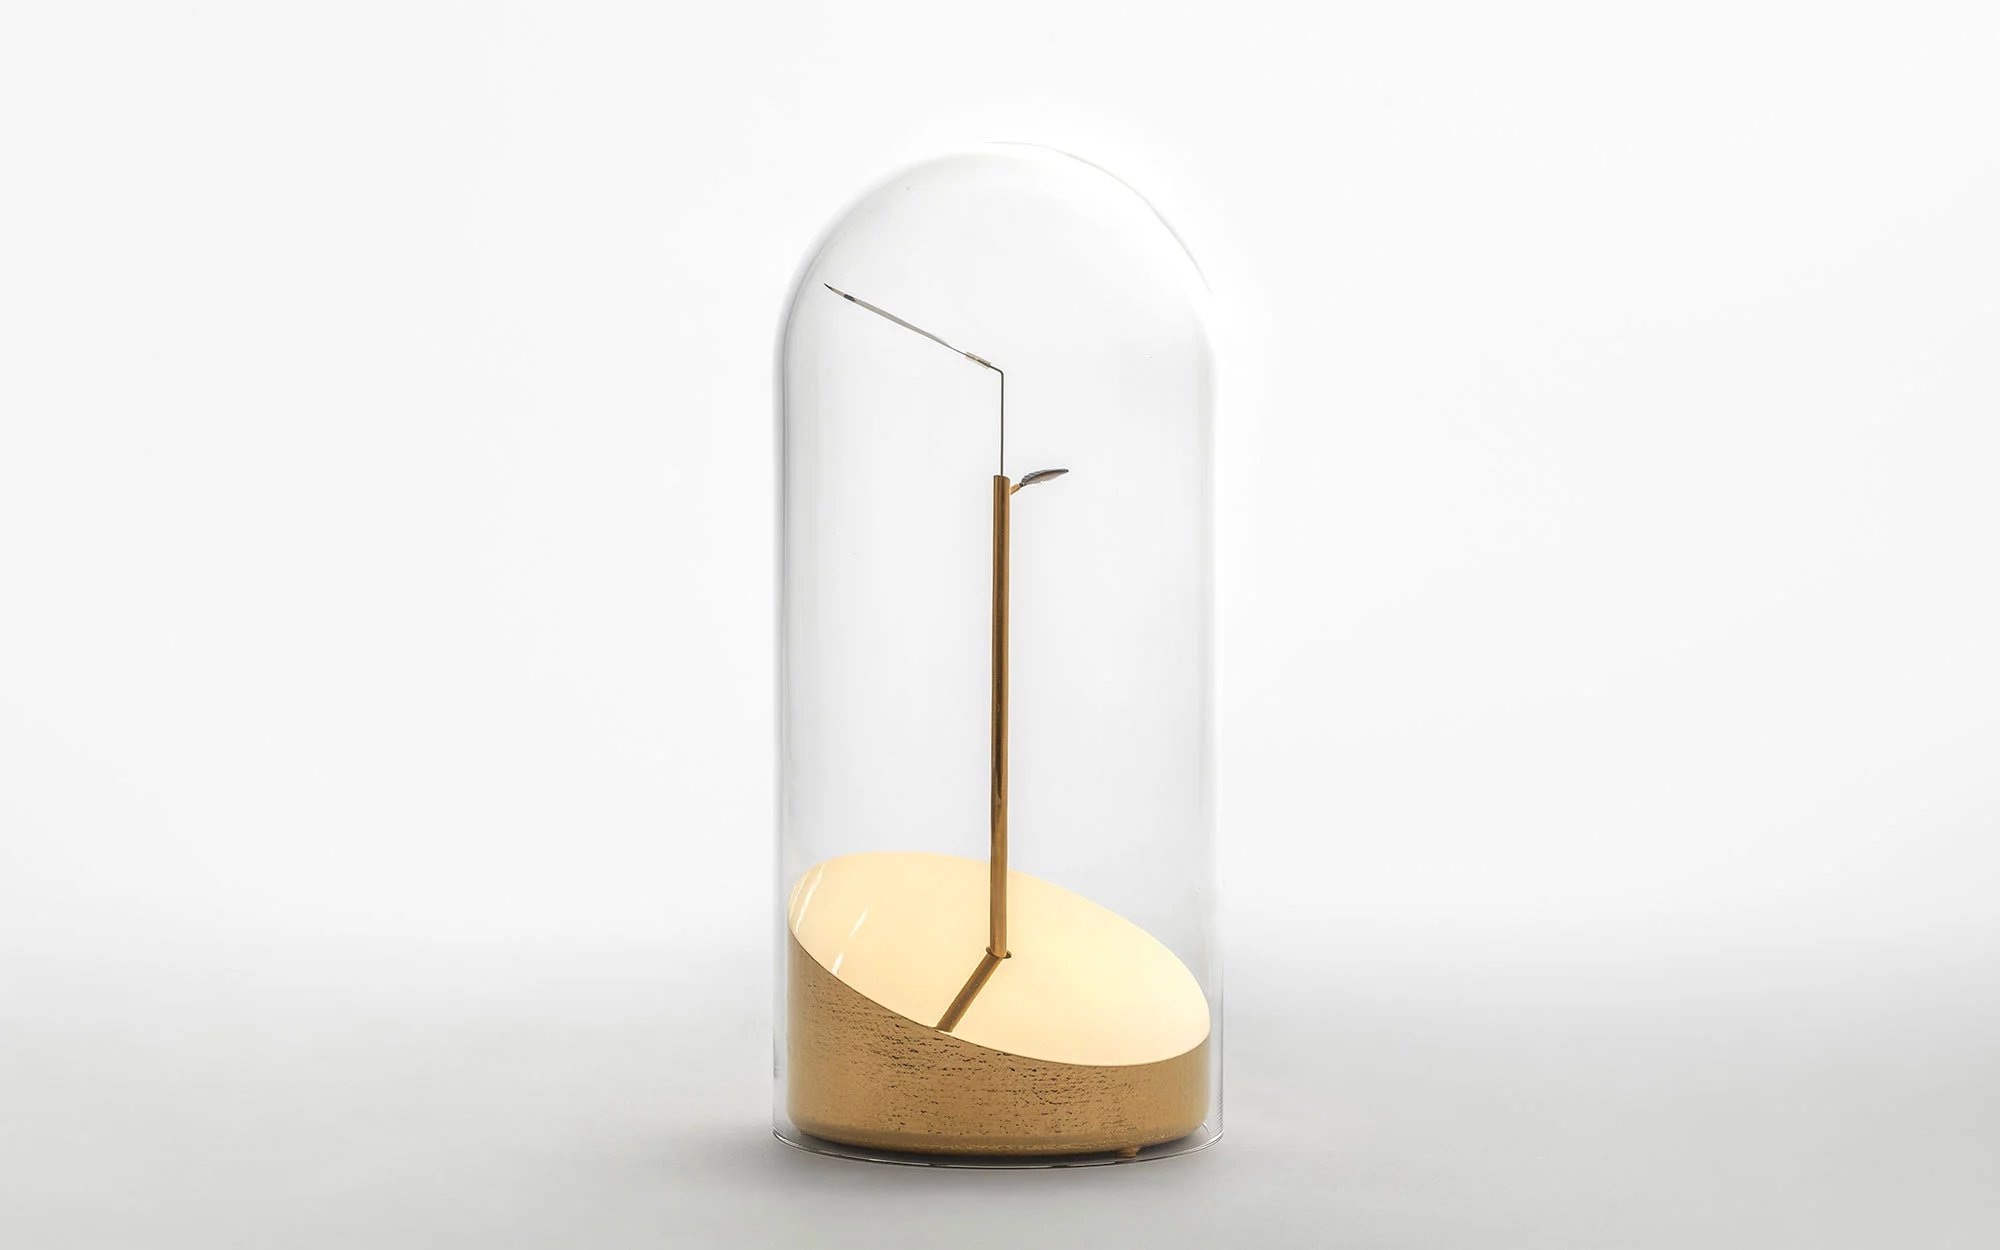 Time Flies - Studio Wieki Somers - Vase - Galerie kreo